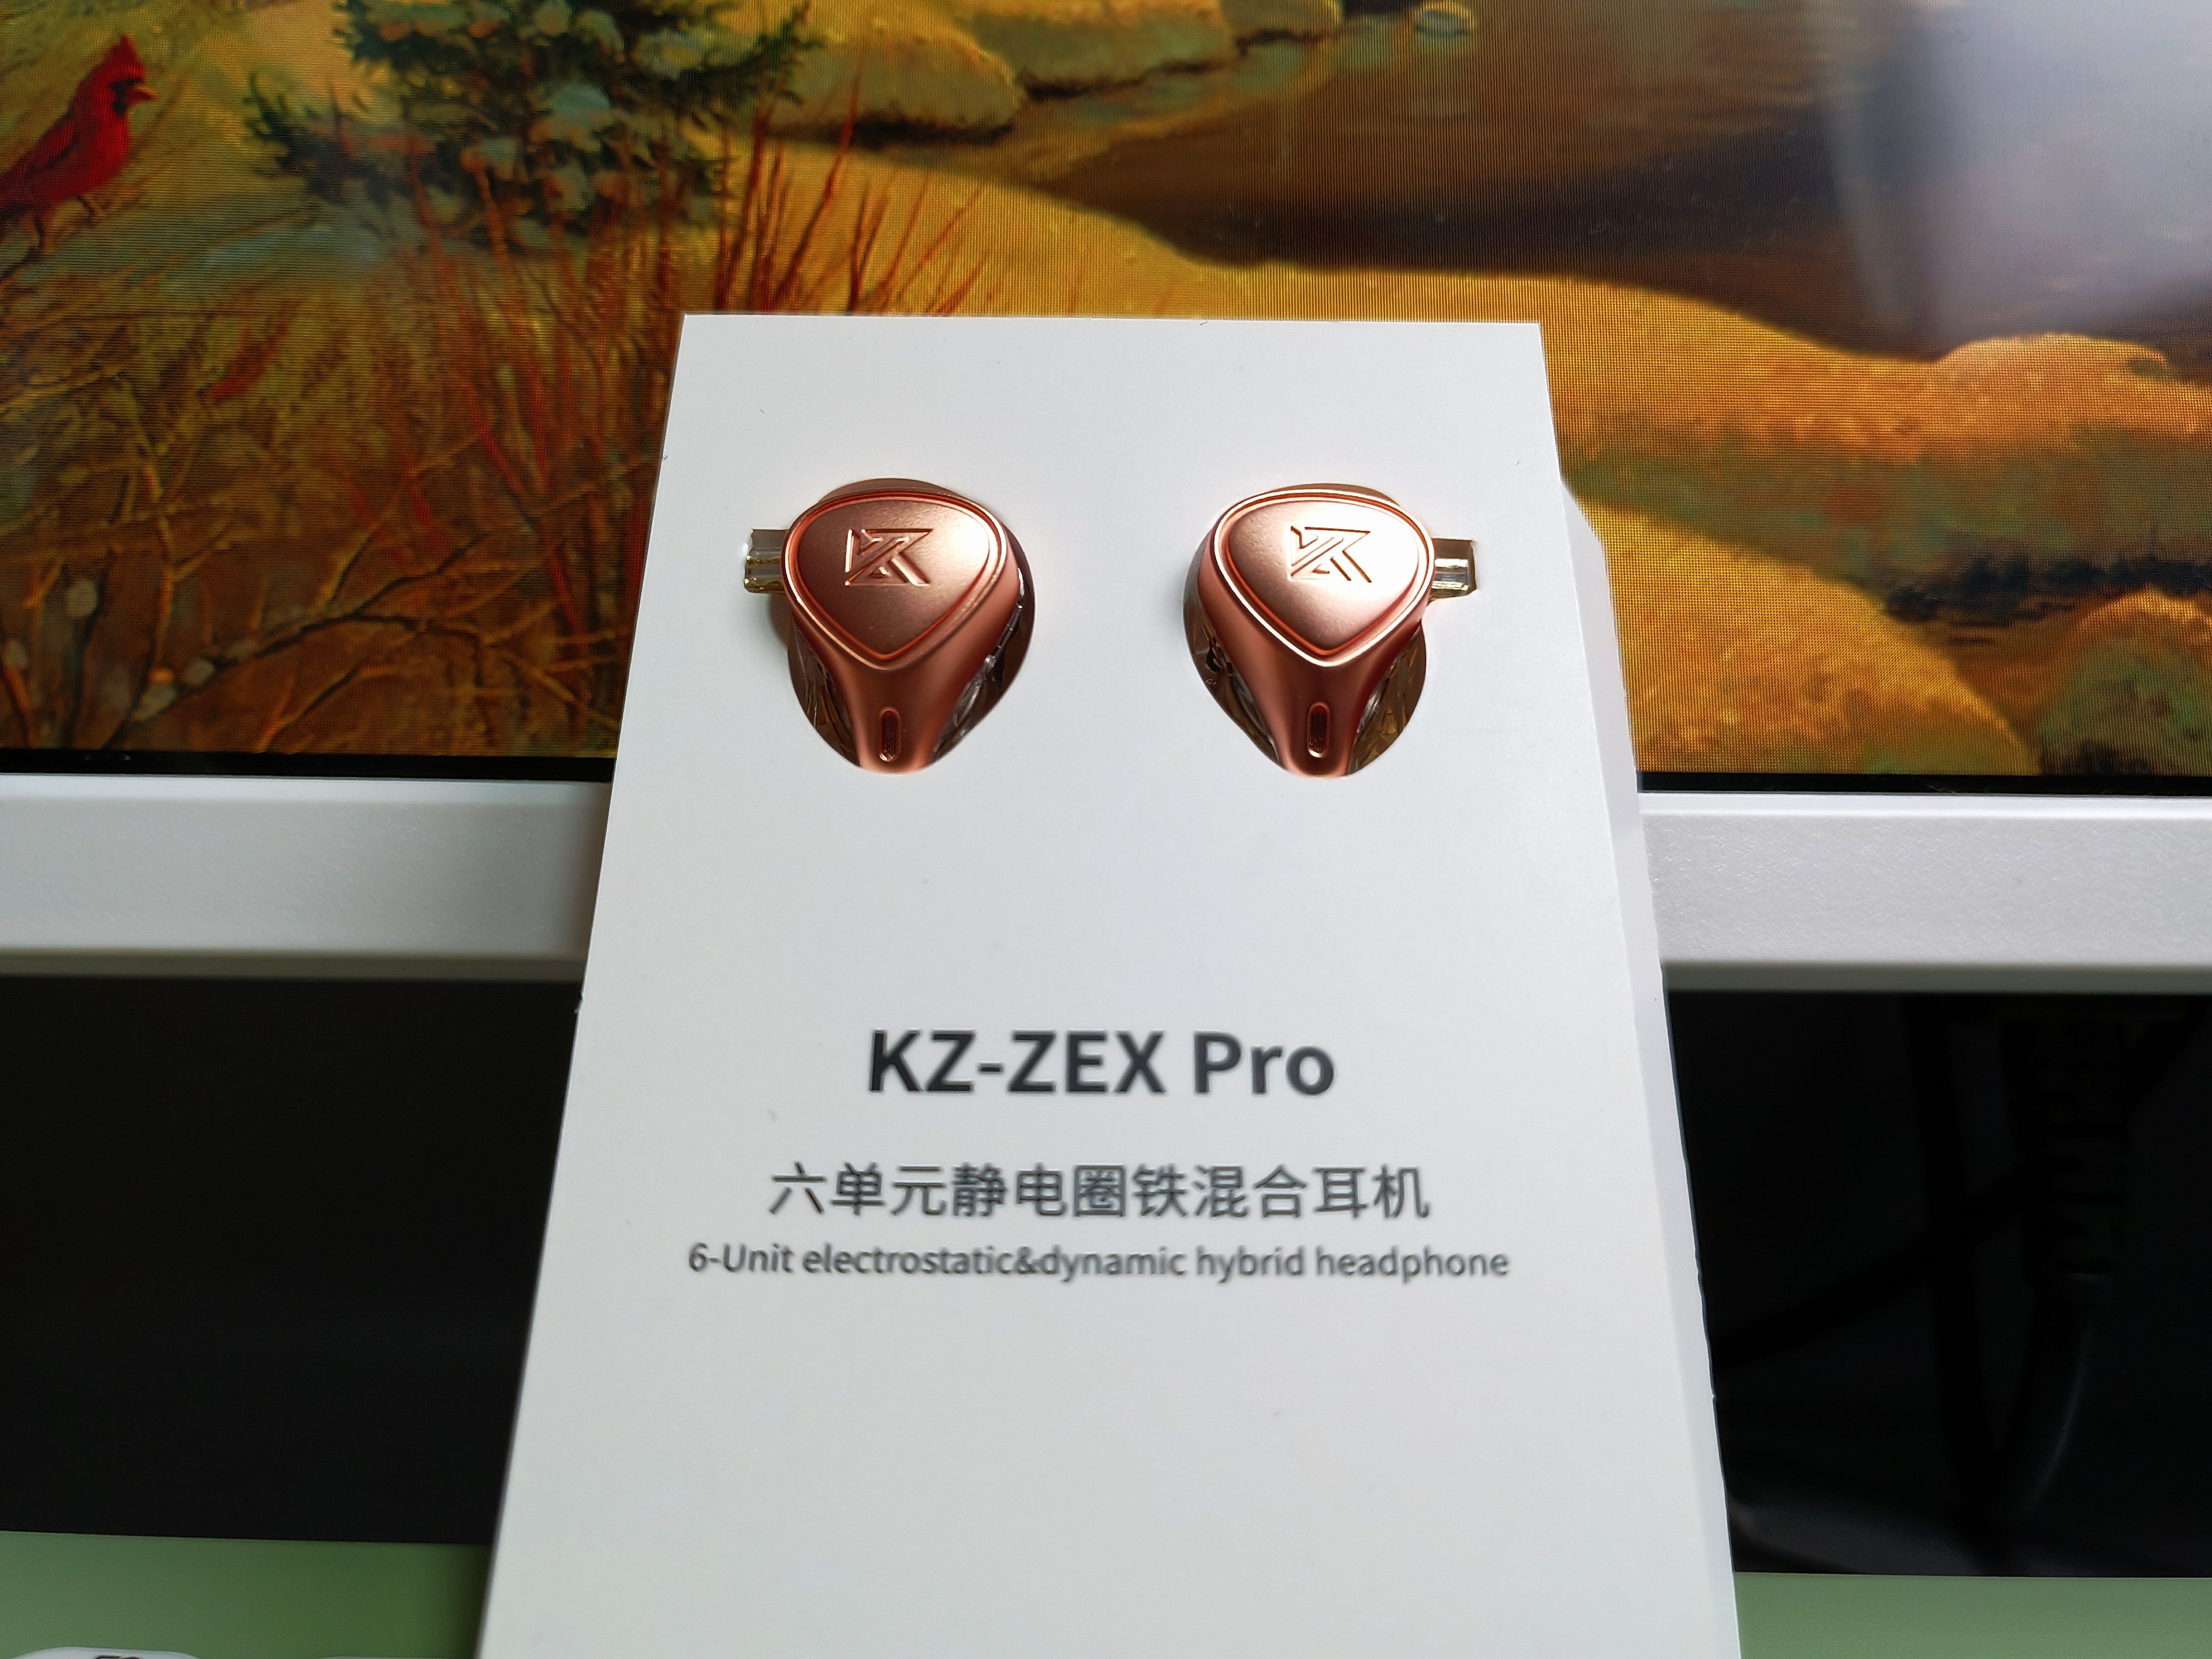 200元买千元质感�Q���x��堆料狂内��P��KZ ZEX Pro静电圈铁��x��体验